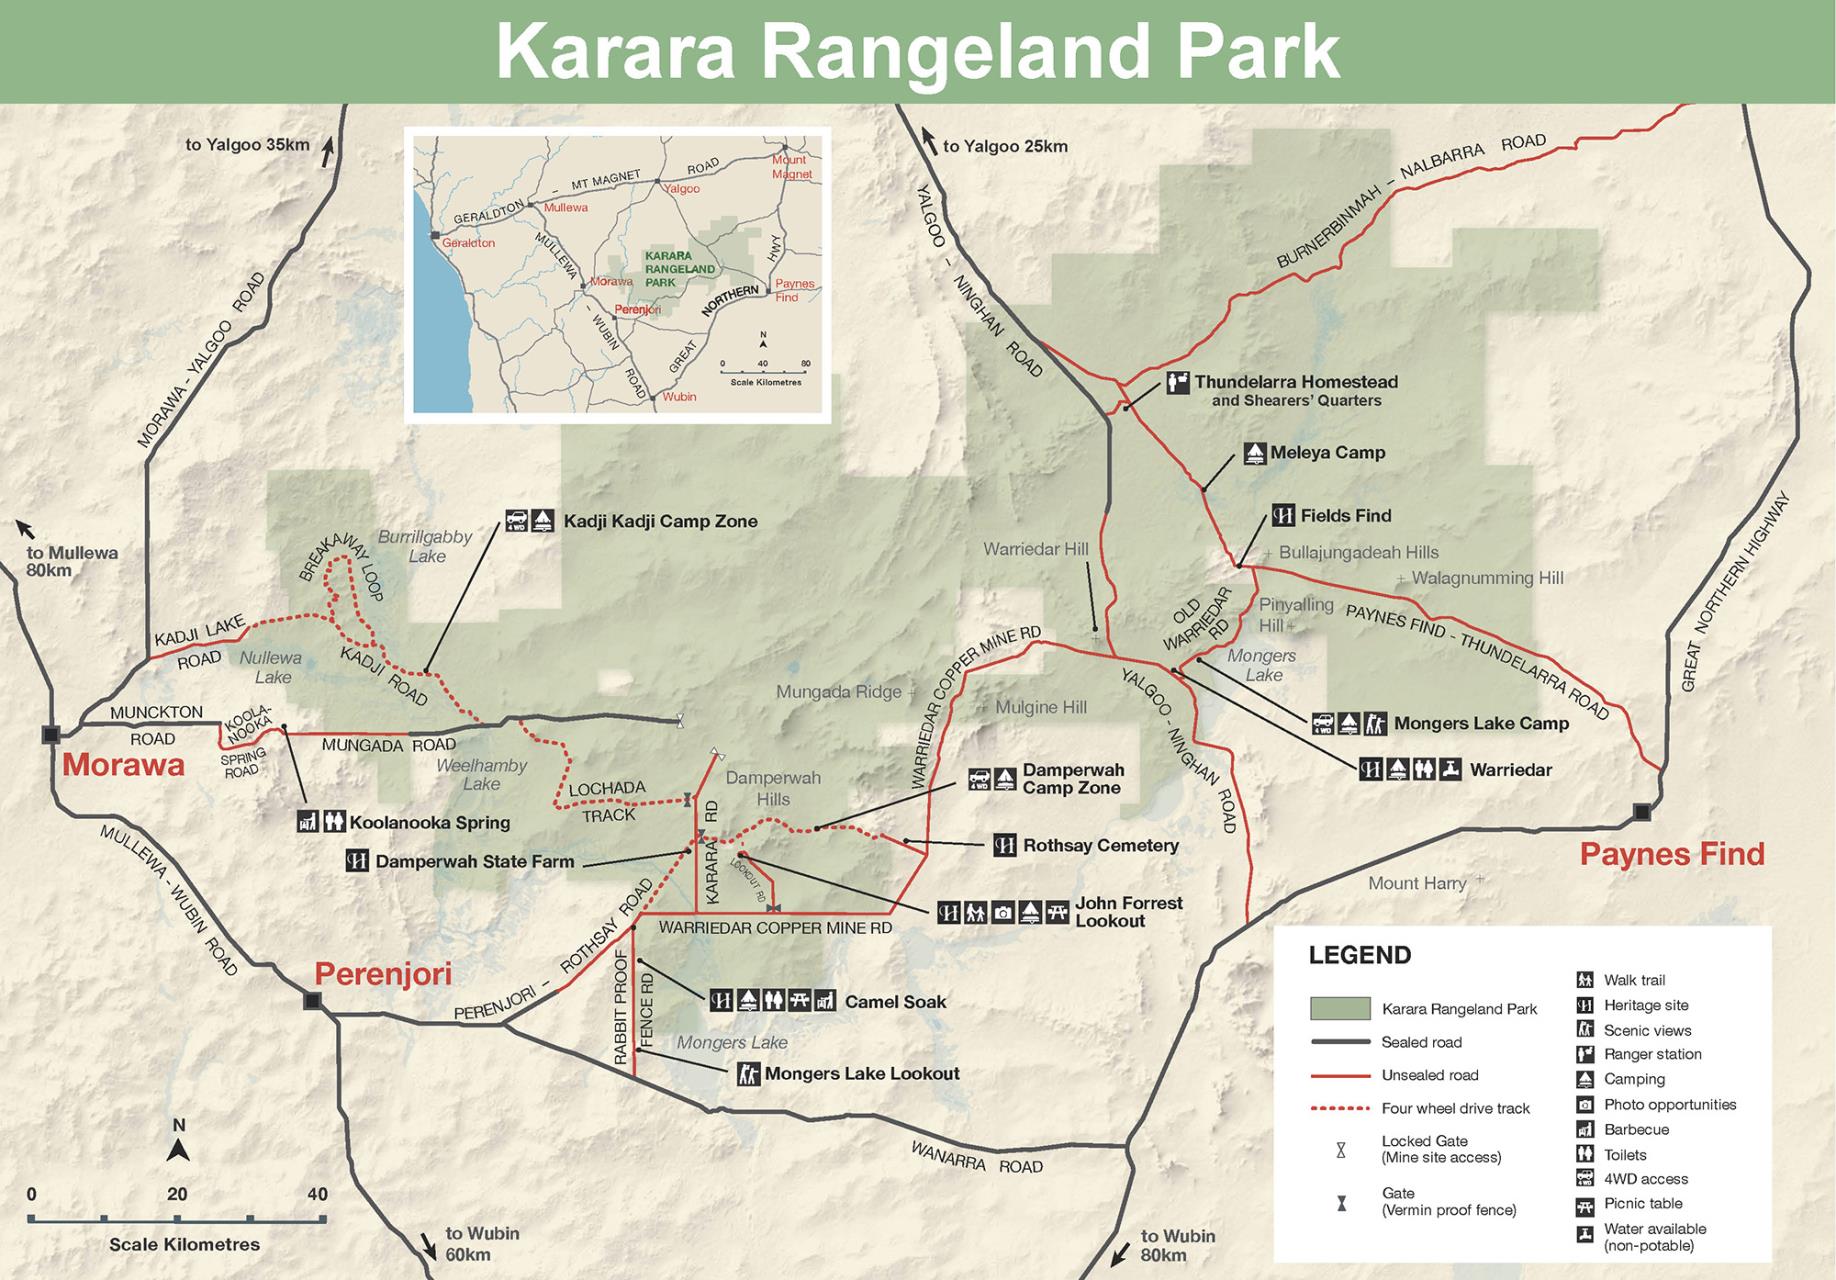 KARARA RANGELAND PARK MAP